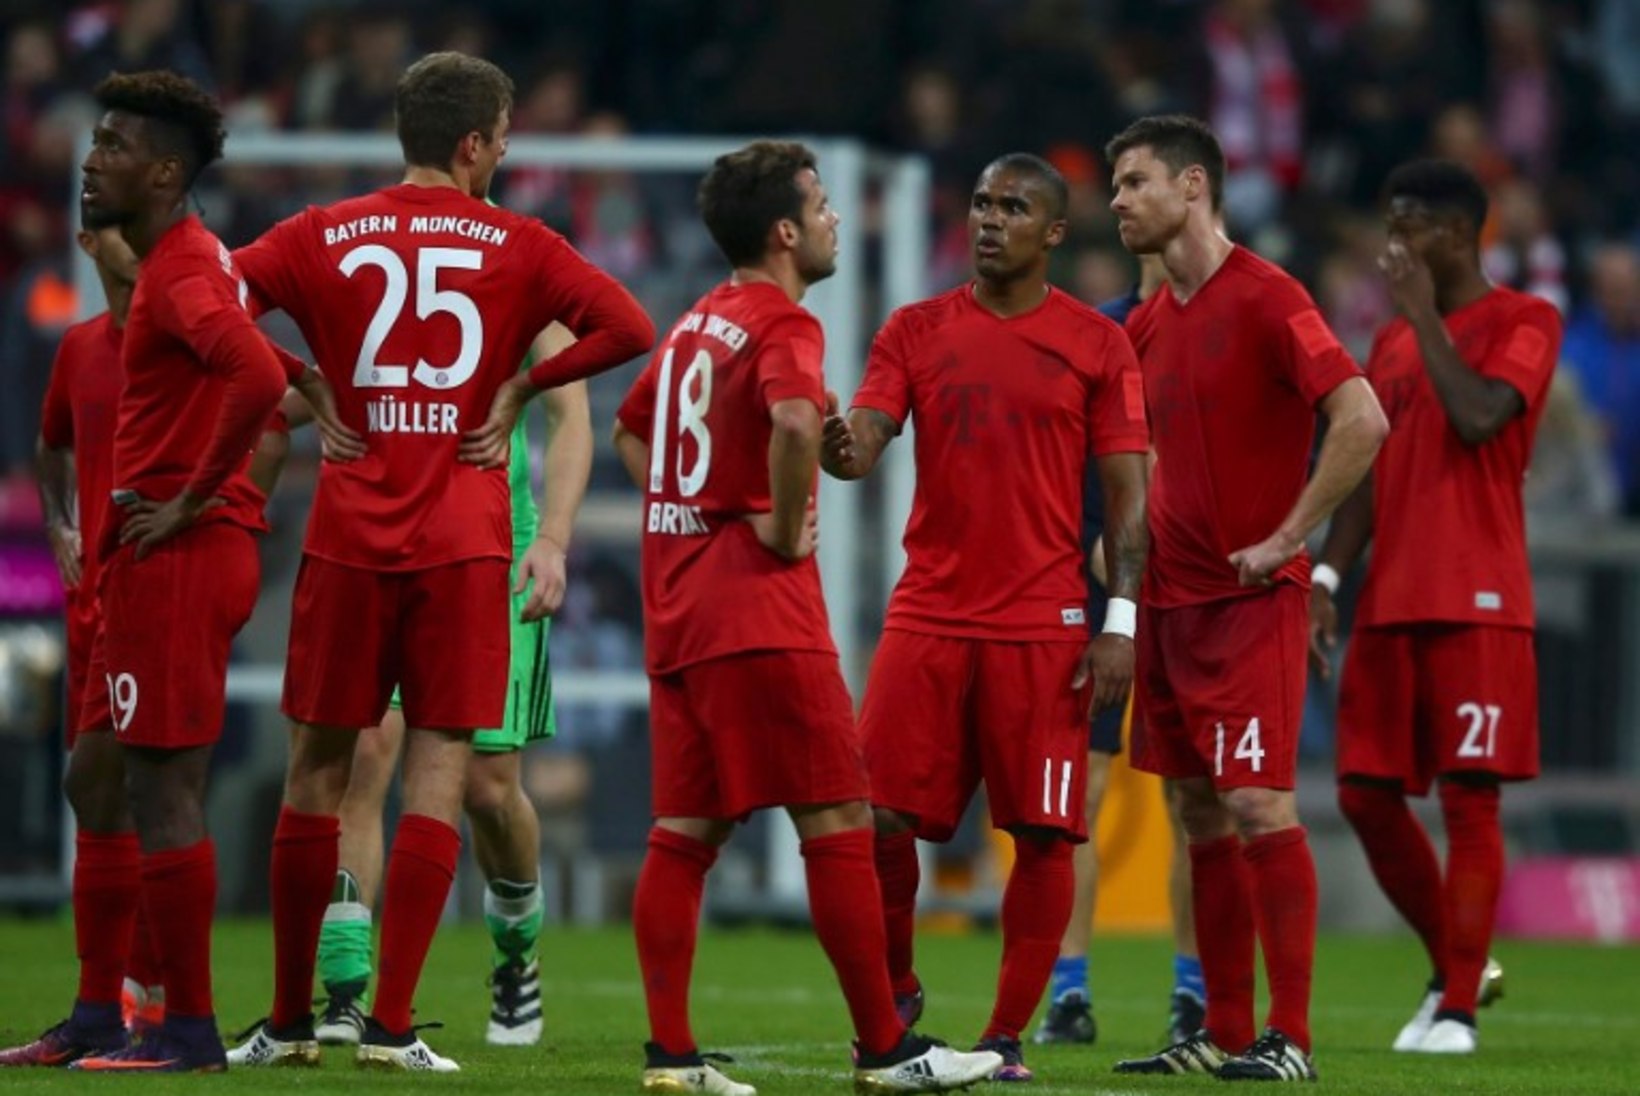 Venemaa lõvikoopas põrunud Bayern on kriisis?